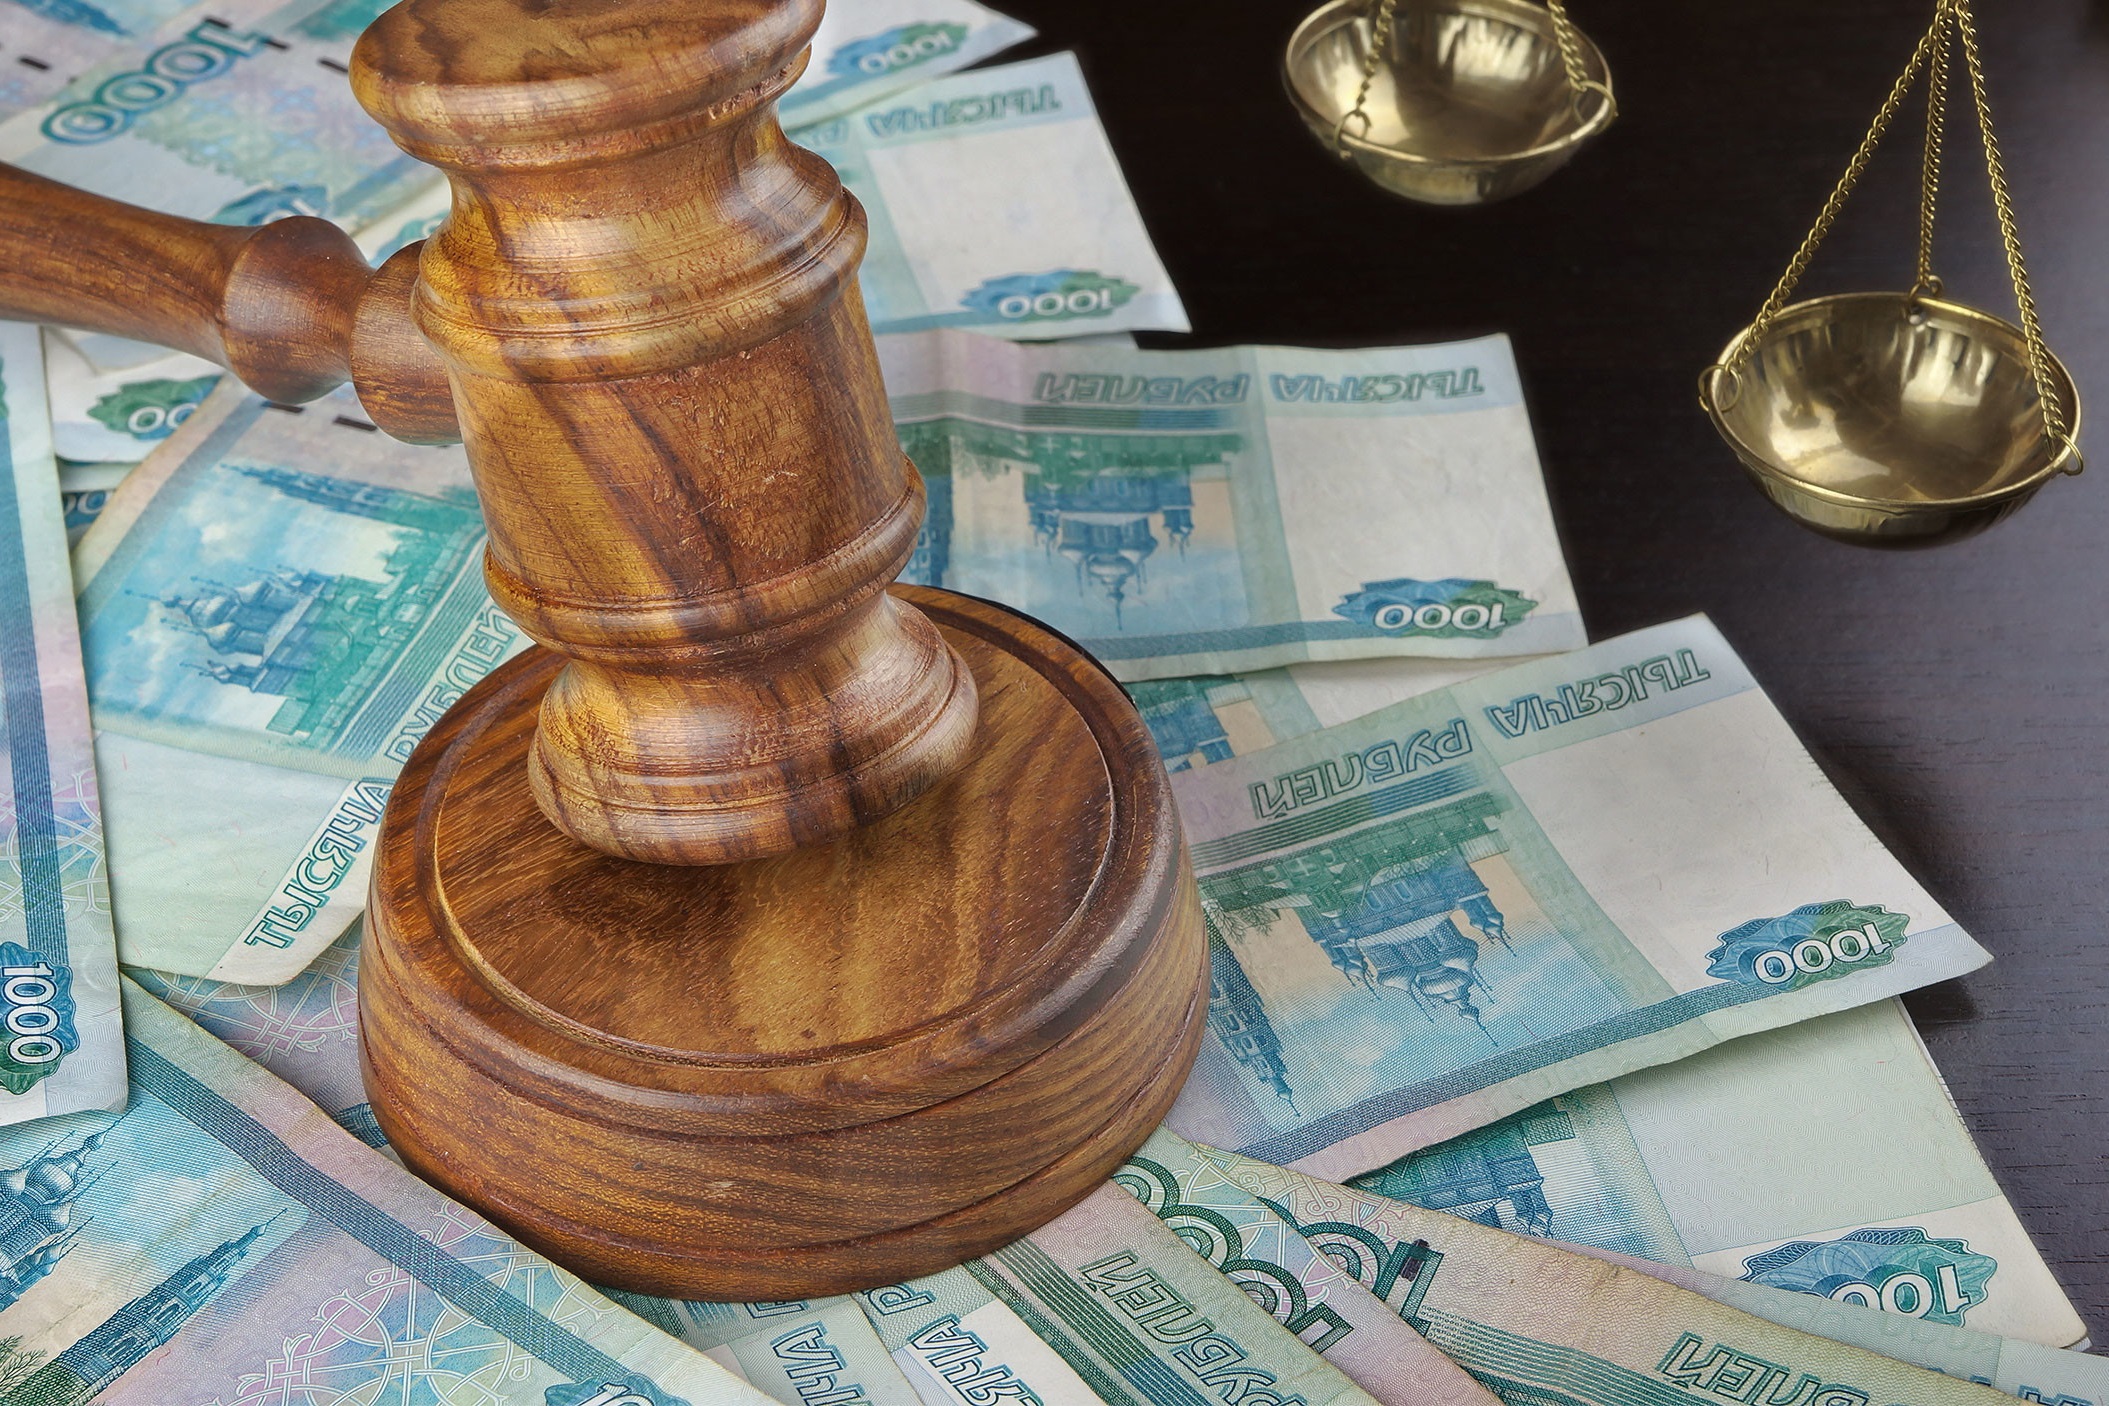 Сбербанк по ошибке выдал наследнику более 240 тысяч рублей из-за технического сбоя